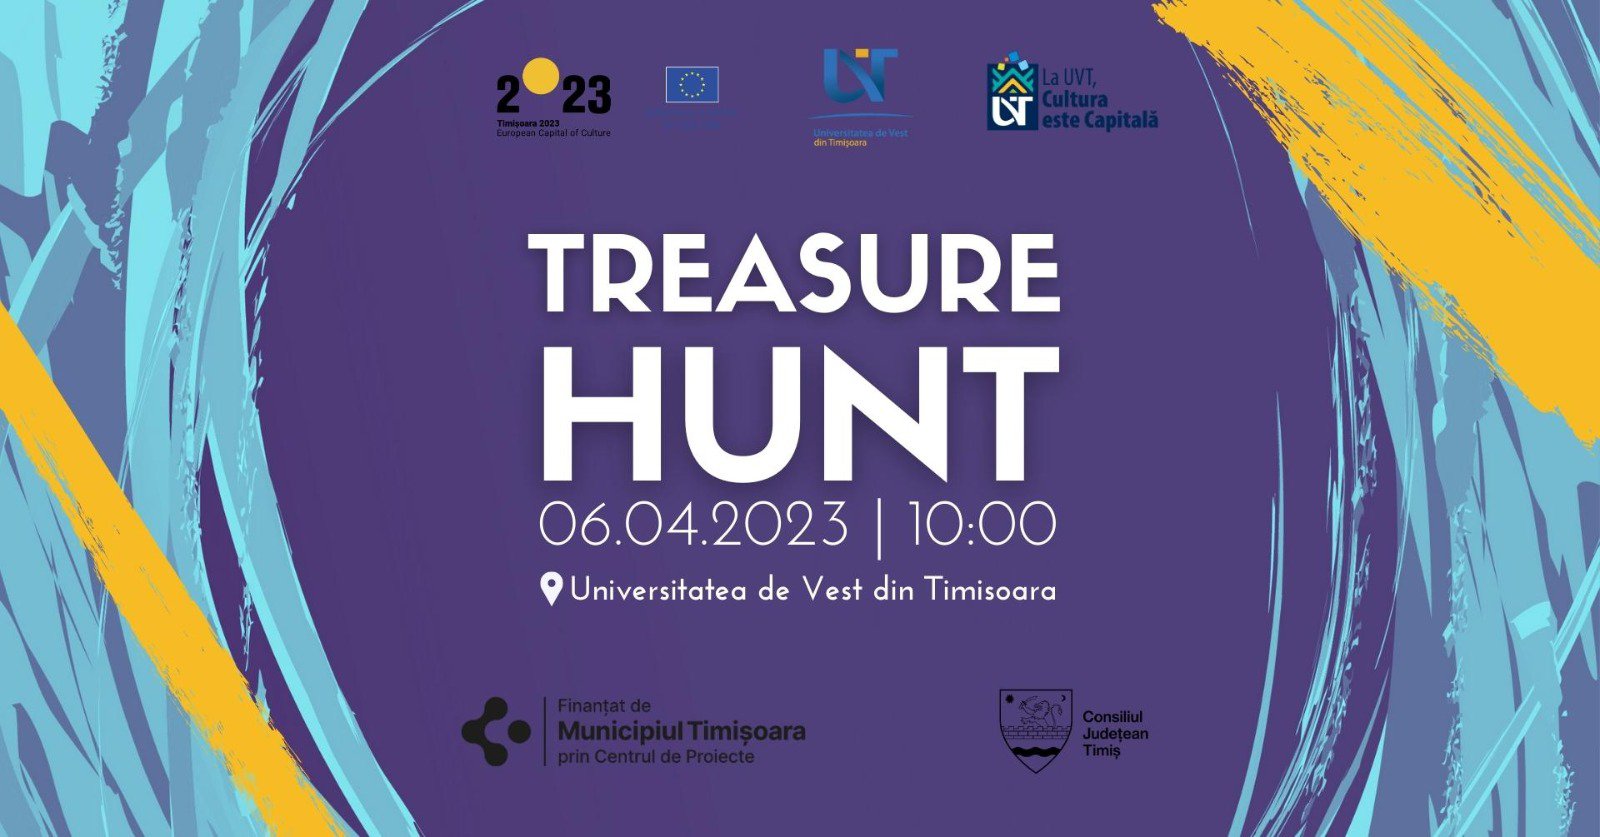 Treasure Hunt „La UVT, Cultura este Capitală!”, 6 Aprilie 2023